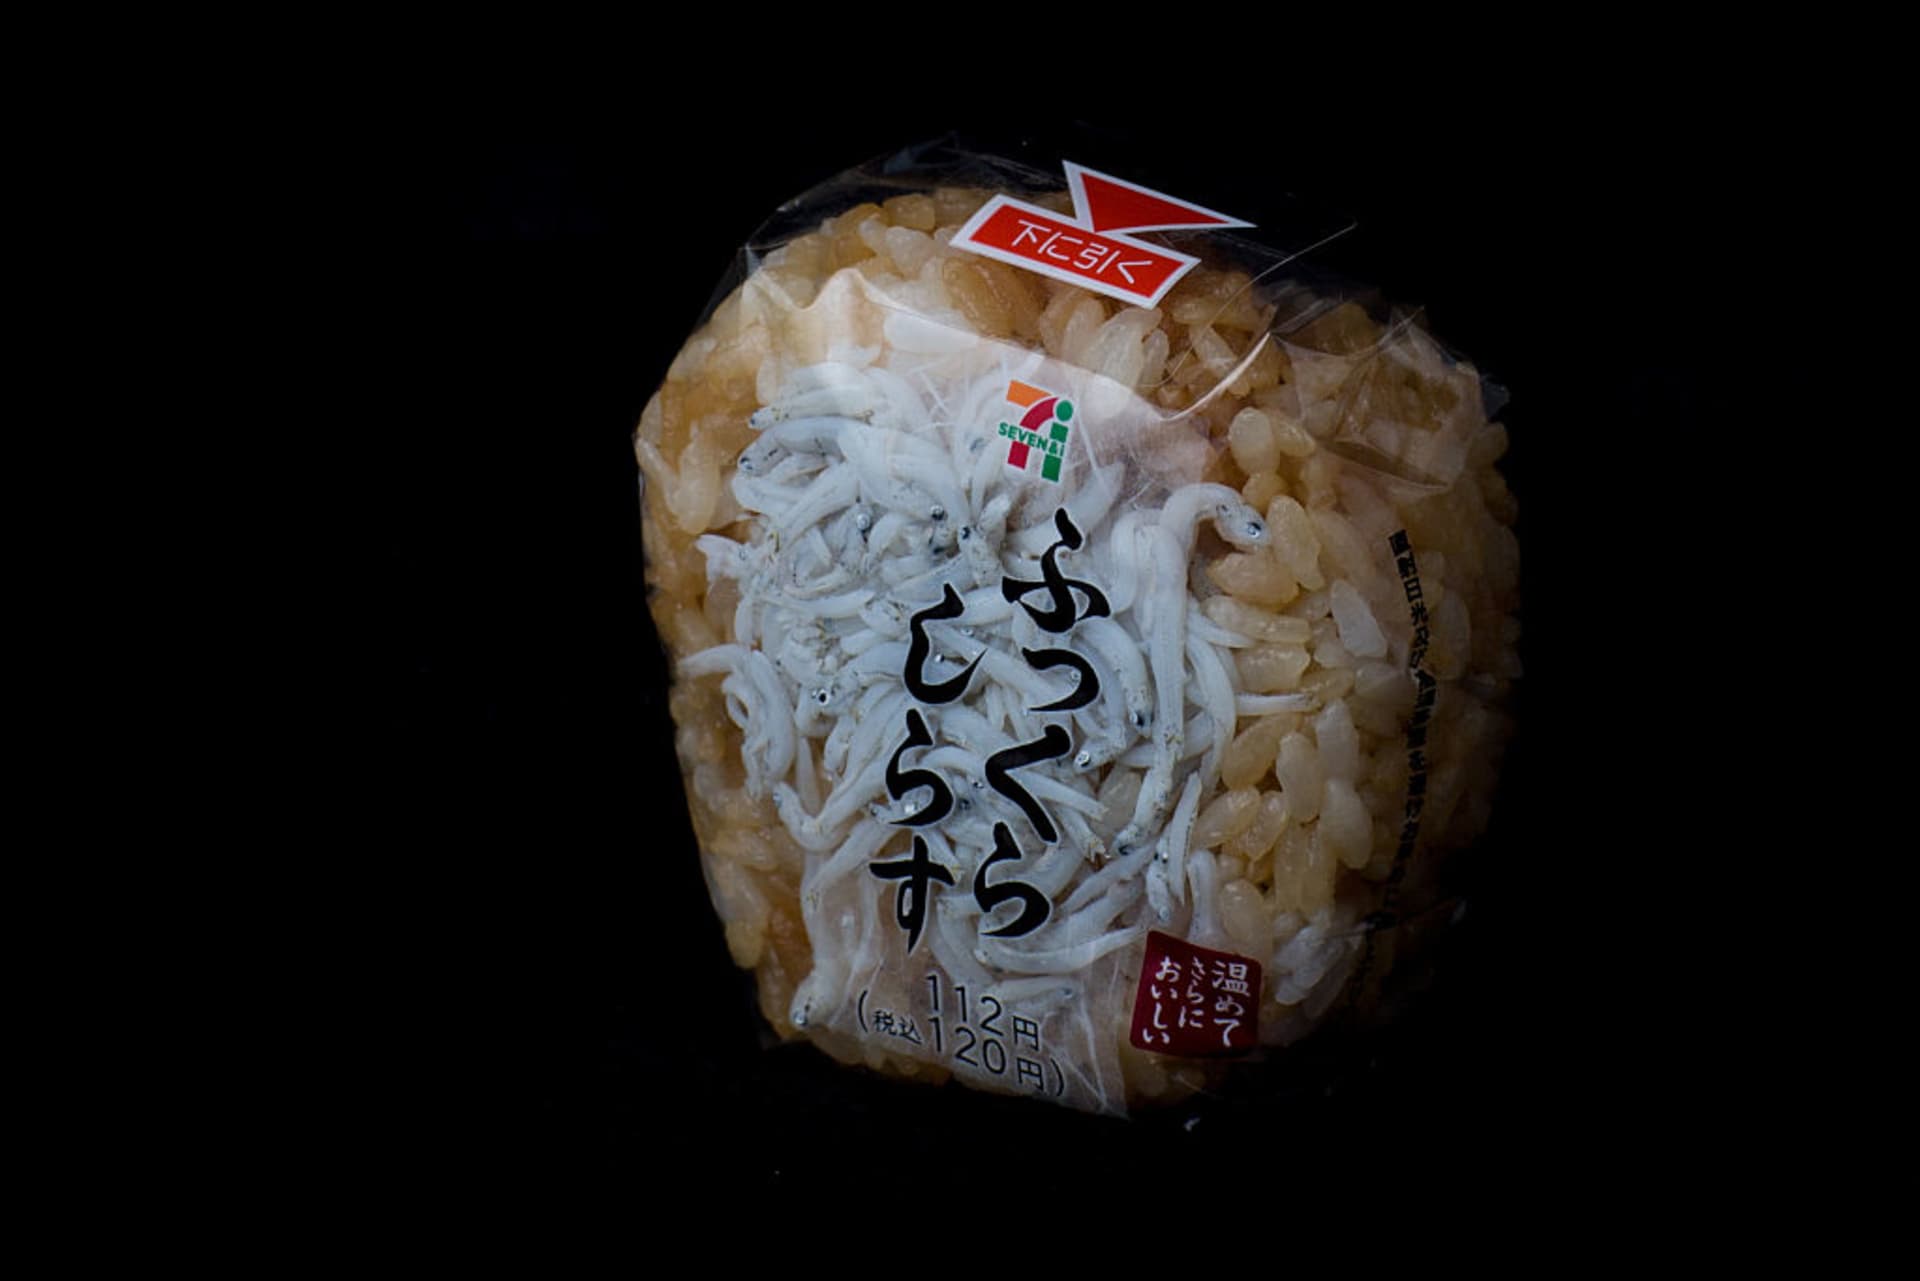 Onigiri  japonské jídlo konzumované hlavně jako svačina nebo rychlé občerstvení.